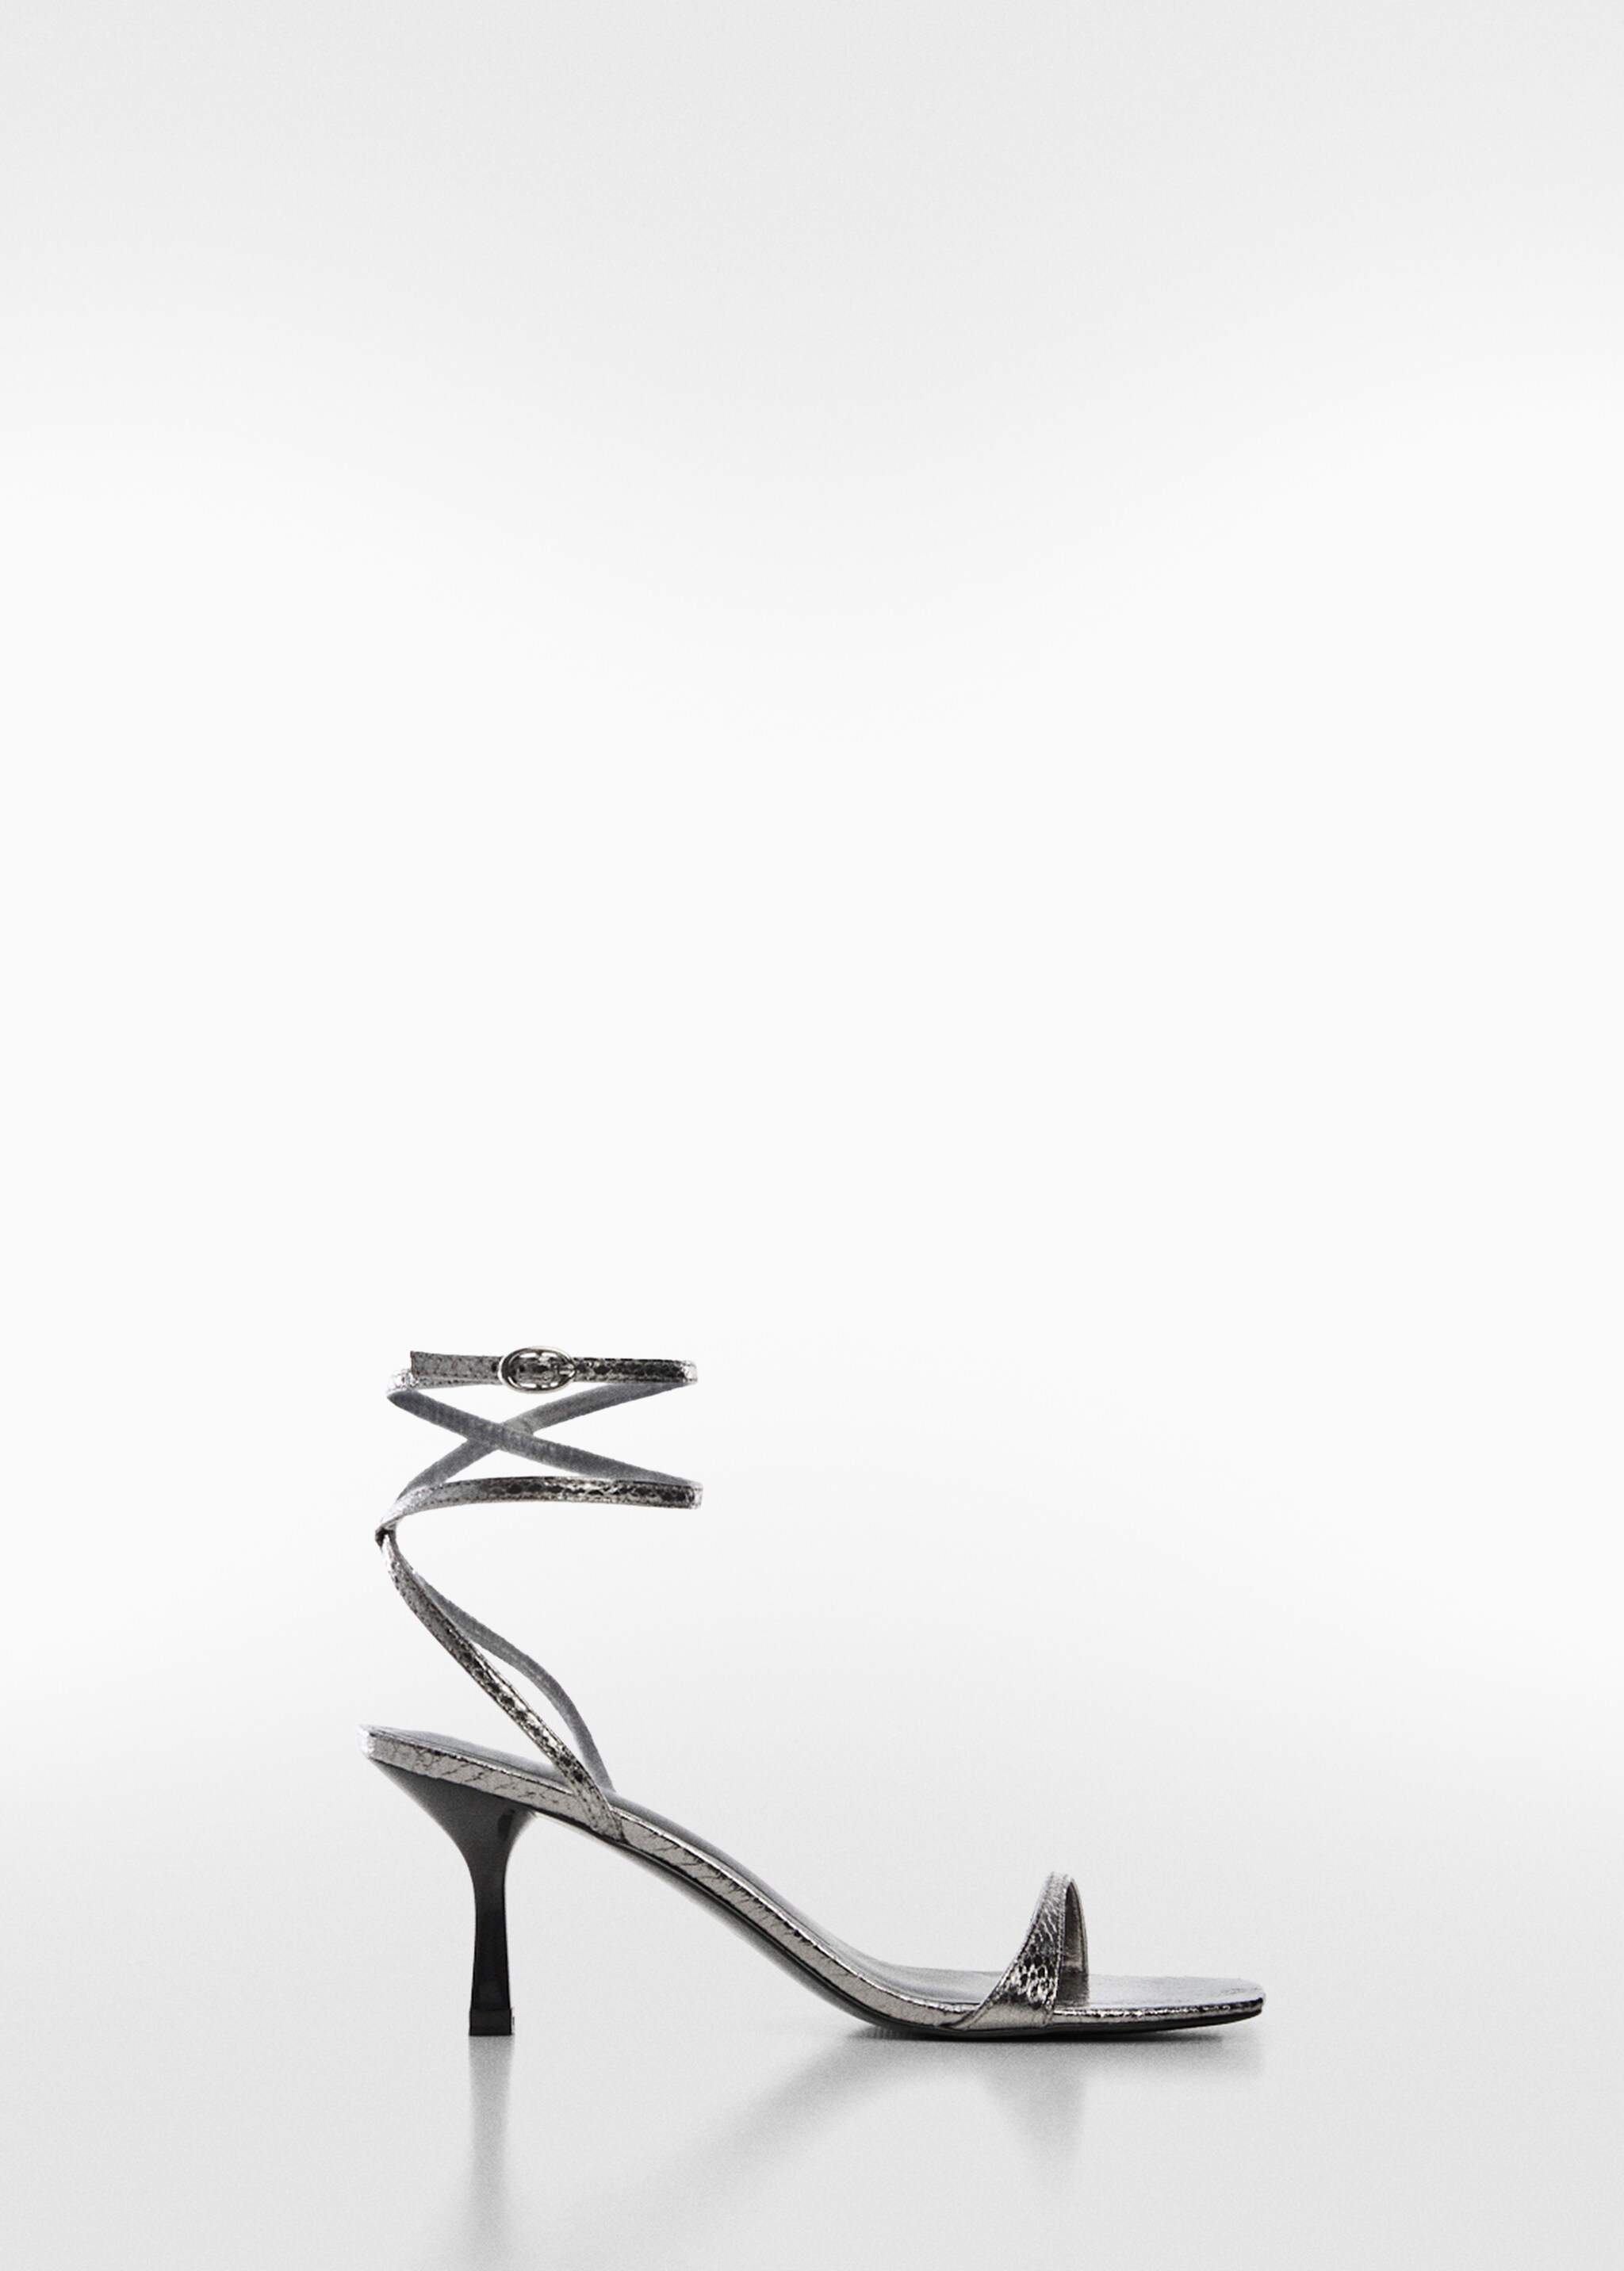 Sandali fasce metallizzate - Articolo senza modello